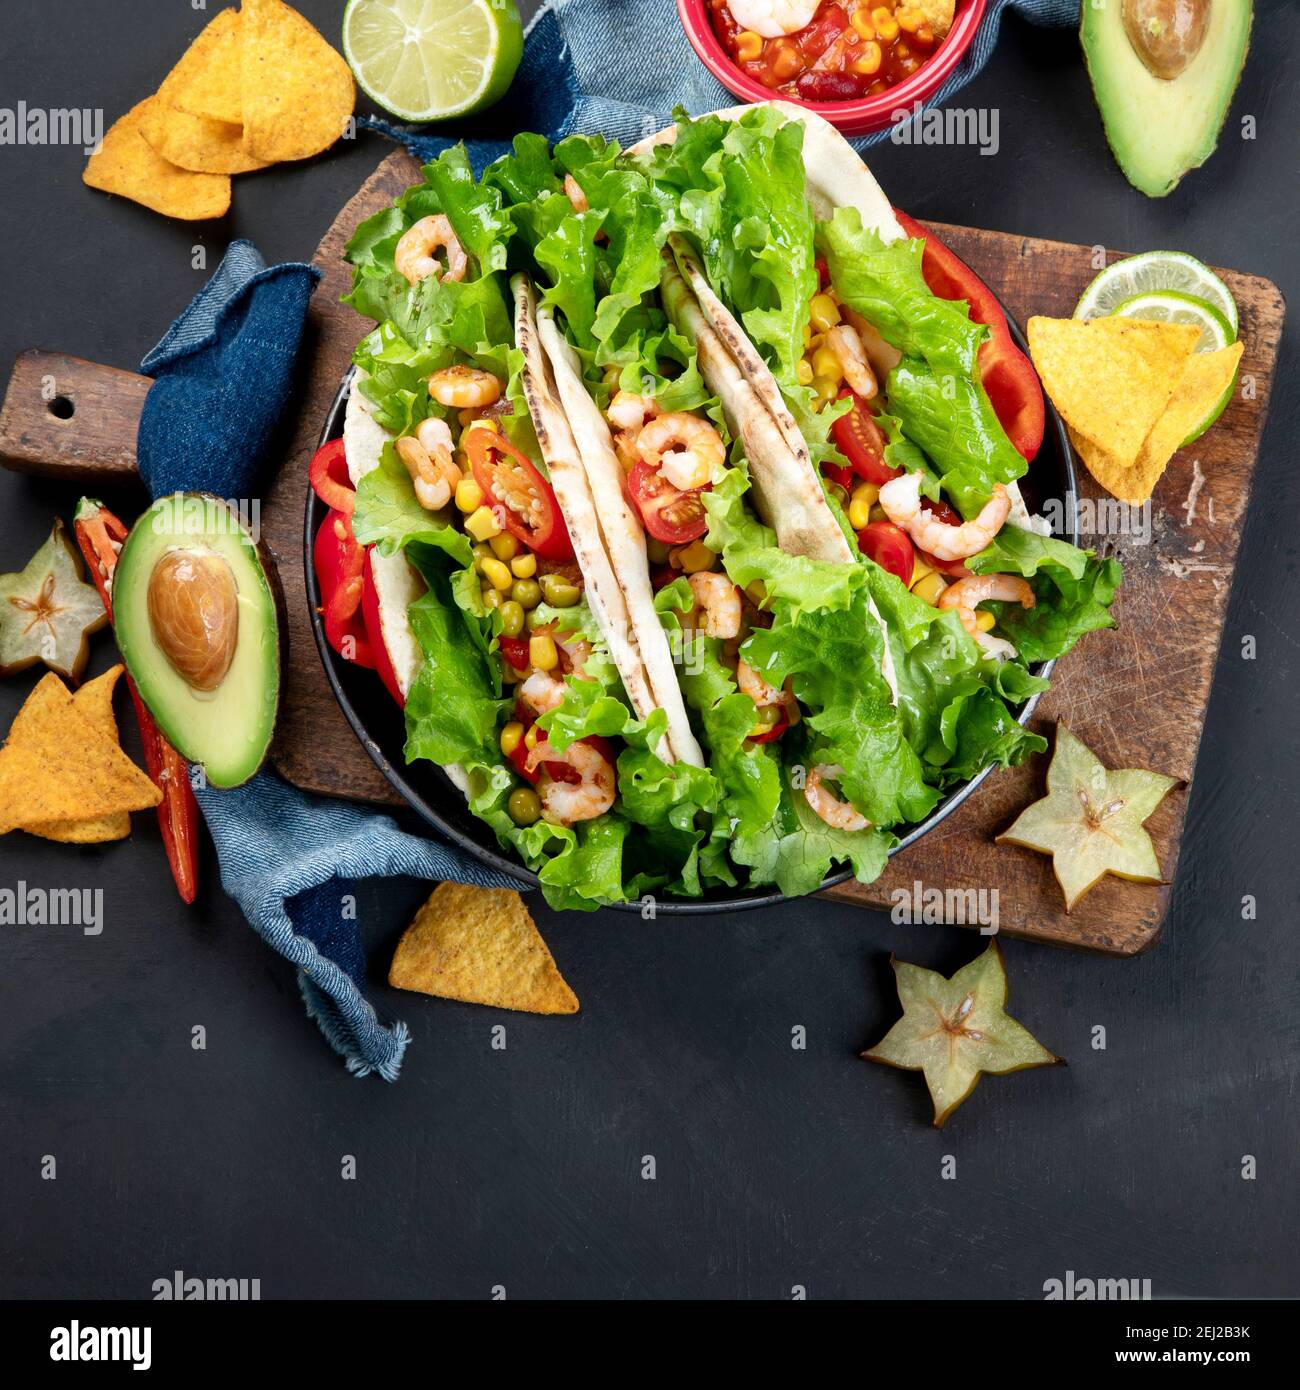 Köstliche hispanisch-mexikanische Speise-Tafel mit Tacos, Guacamole, Garnelen, Avocado und Starfruit. Scharf und würzig. Draufsicht Stockfoto